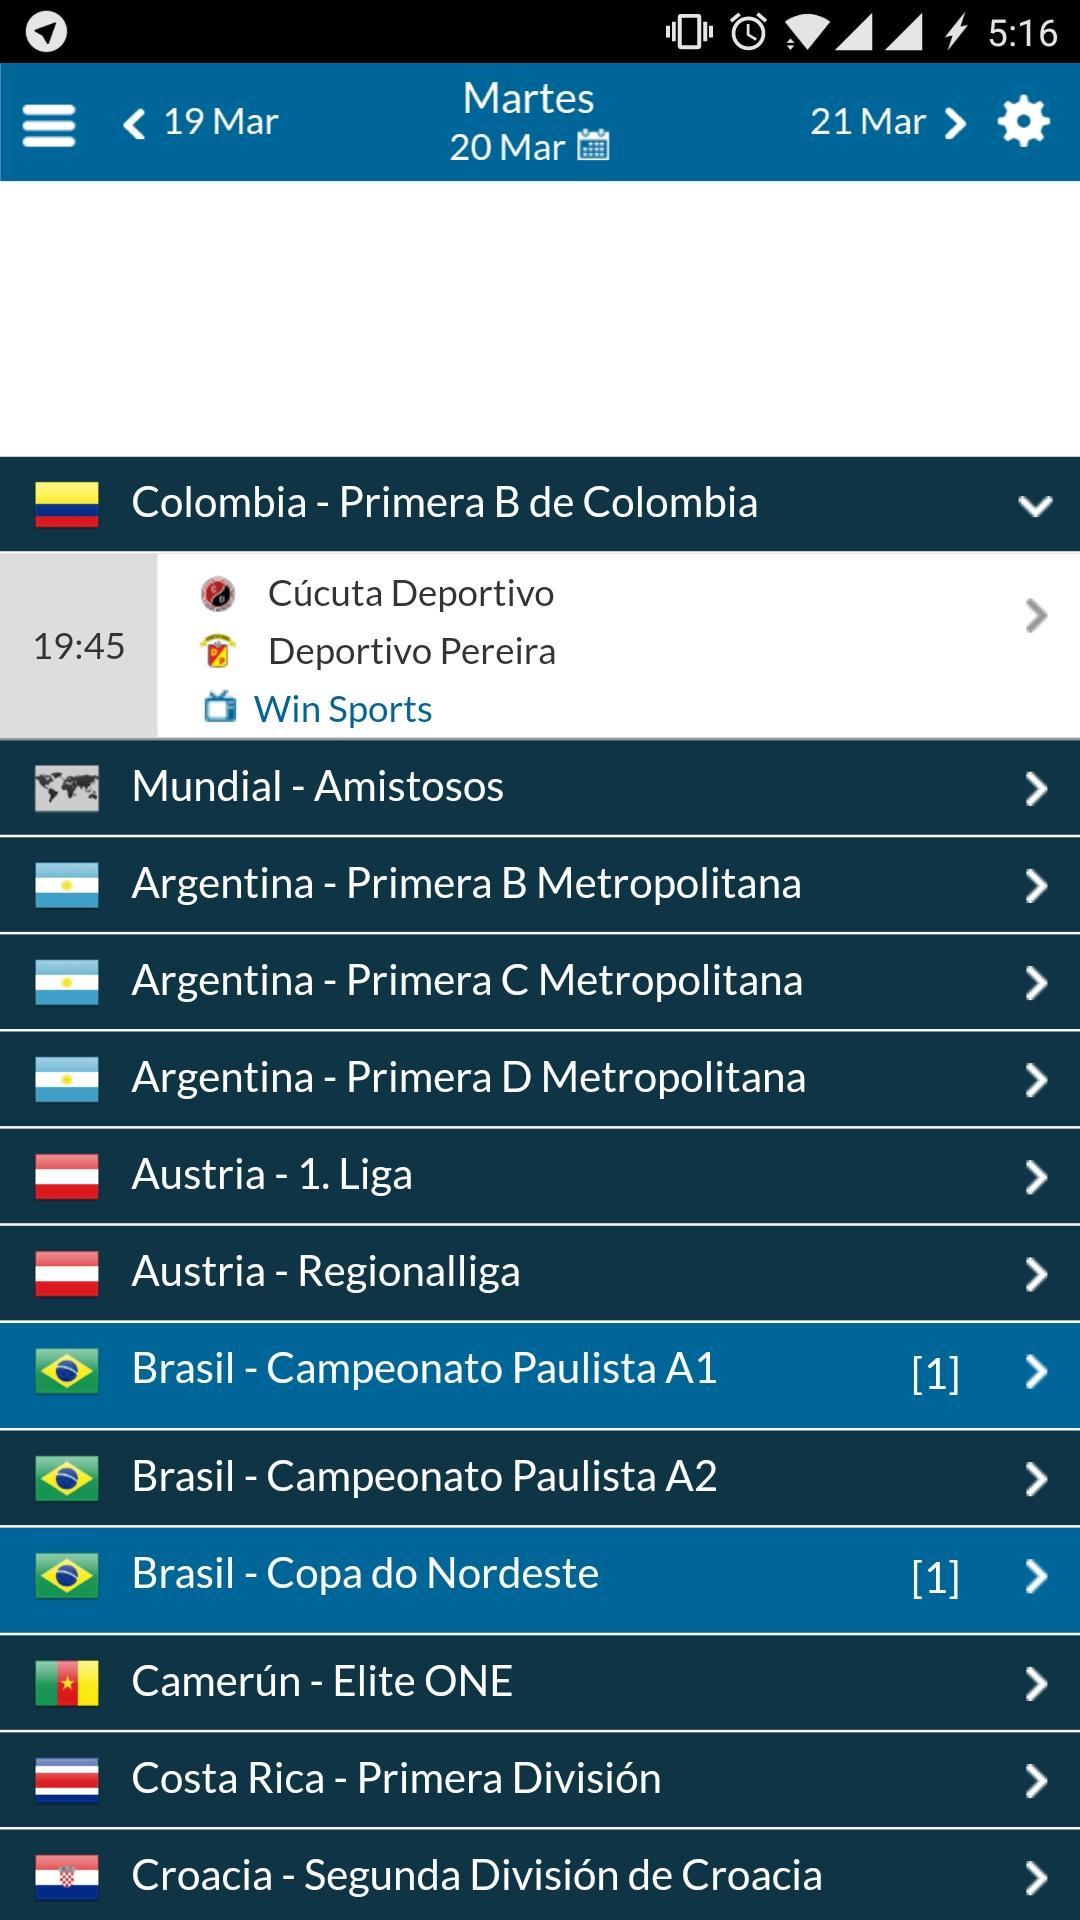 RadioGOL - Radios de Deportes y Resultados Fútbol for Android - APK Download